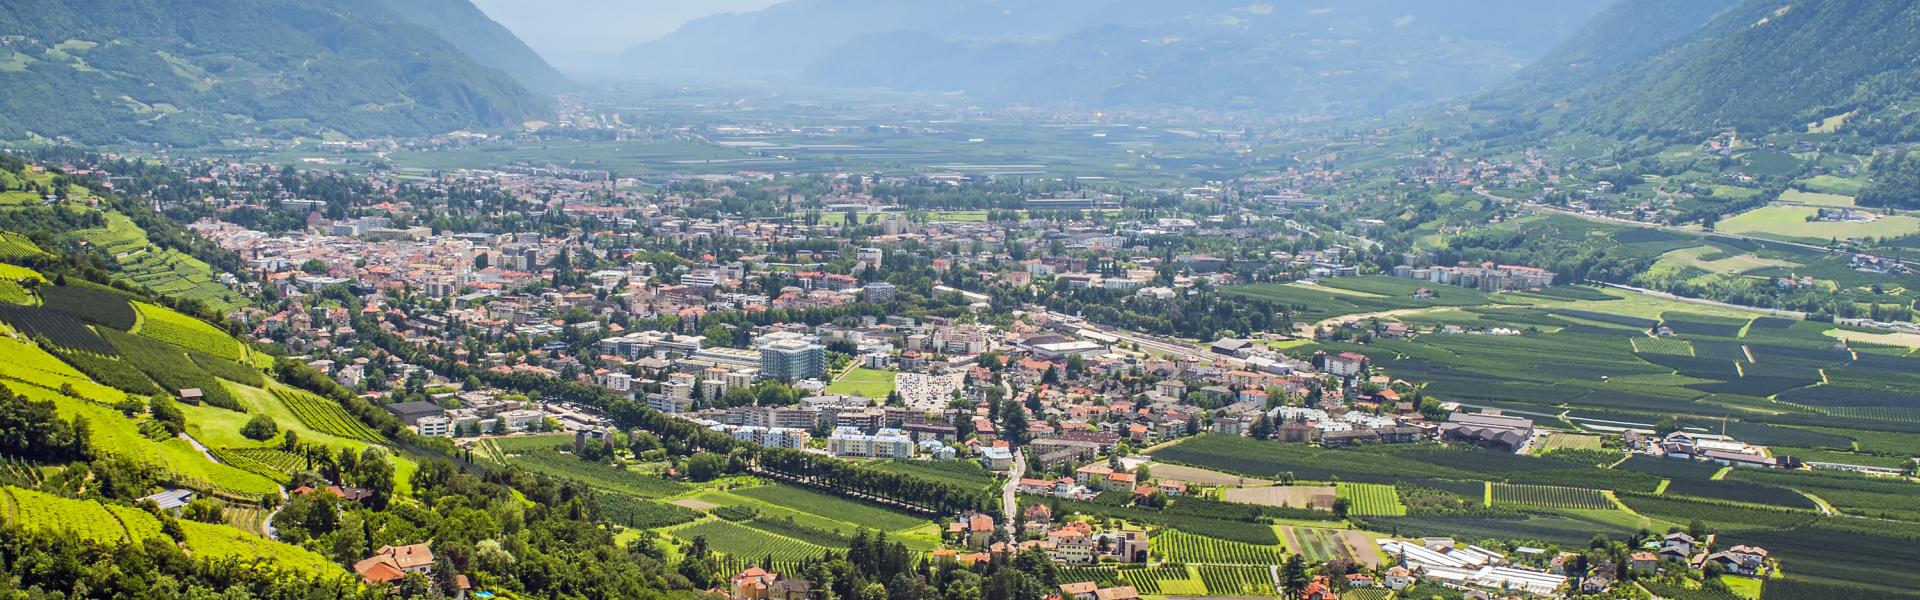 Unterkünfte & Ferienwohnungen in Kirchberg in Tirol  - HomeToGo